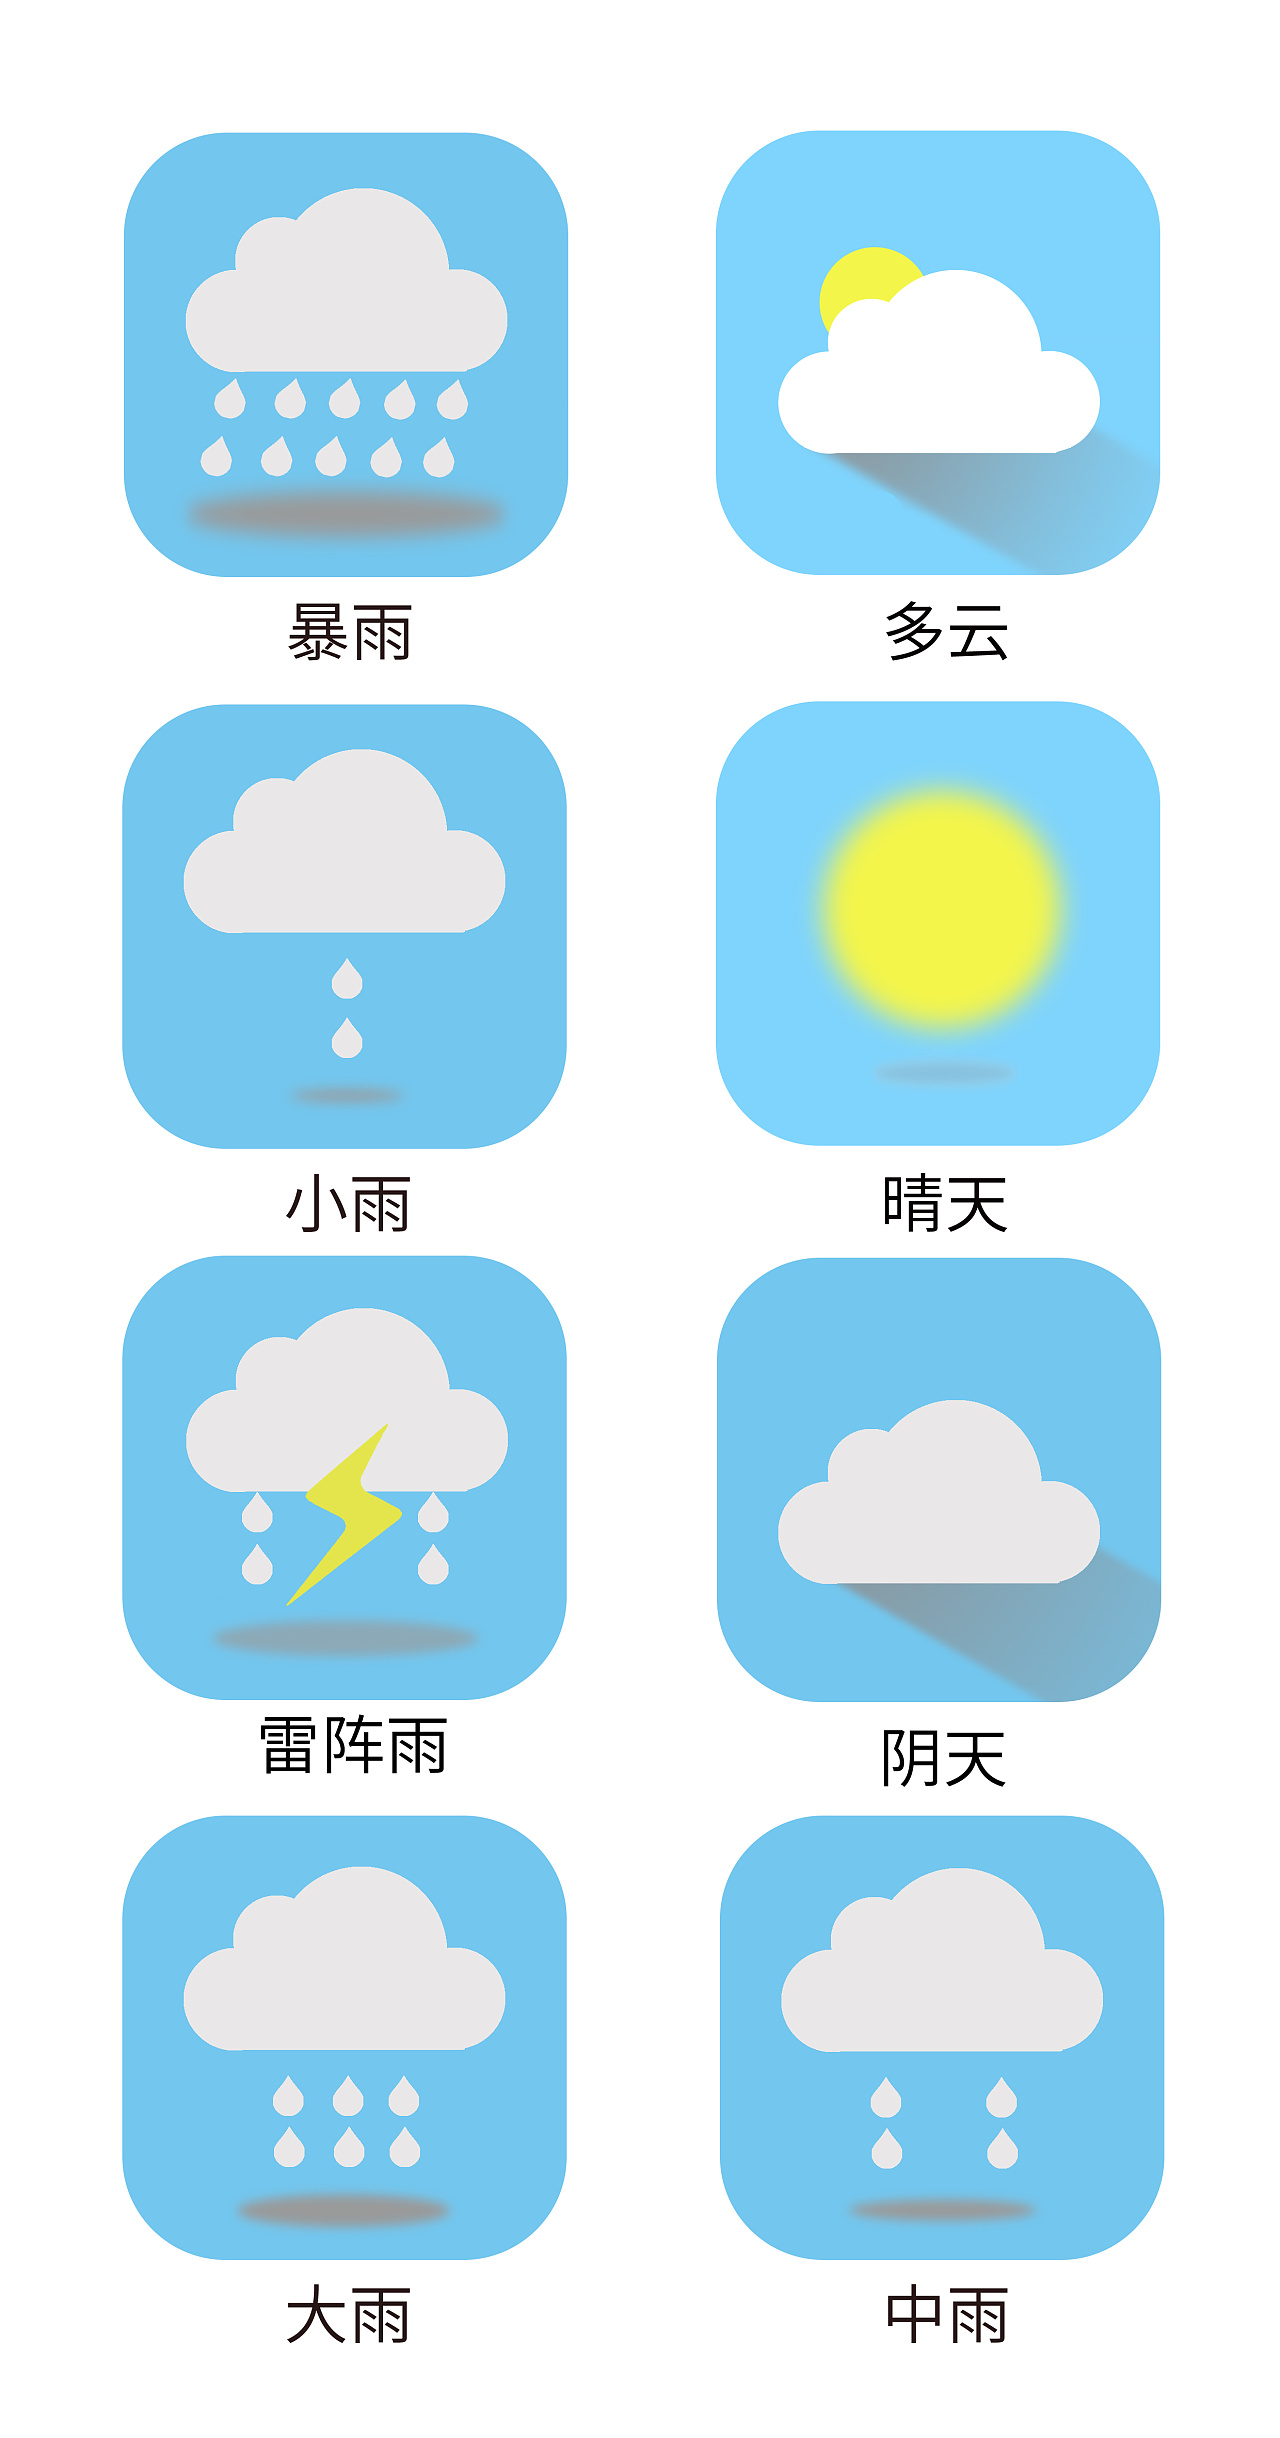 能通过天气图标上的图案的变化就能让用户清楚地知道今天是什么天气